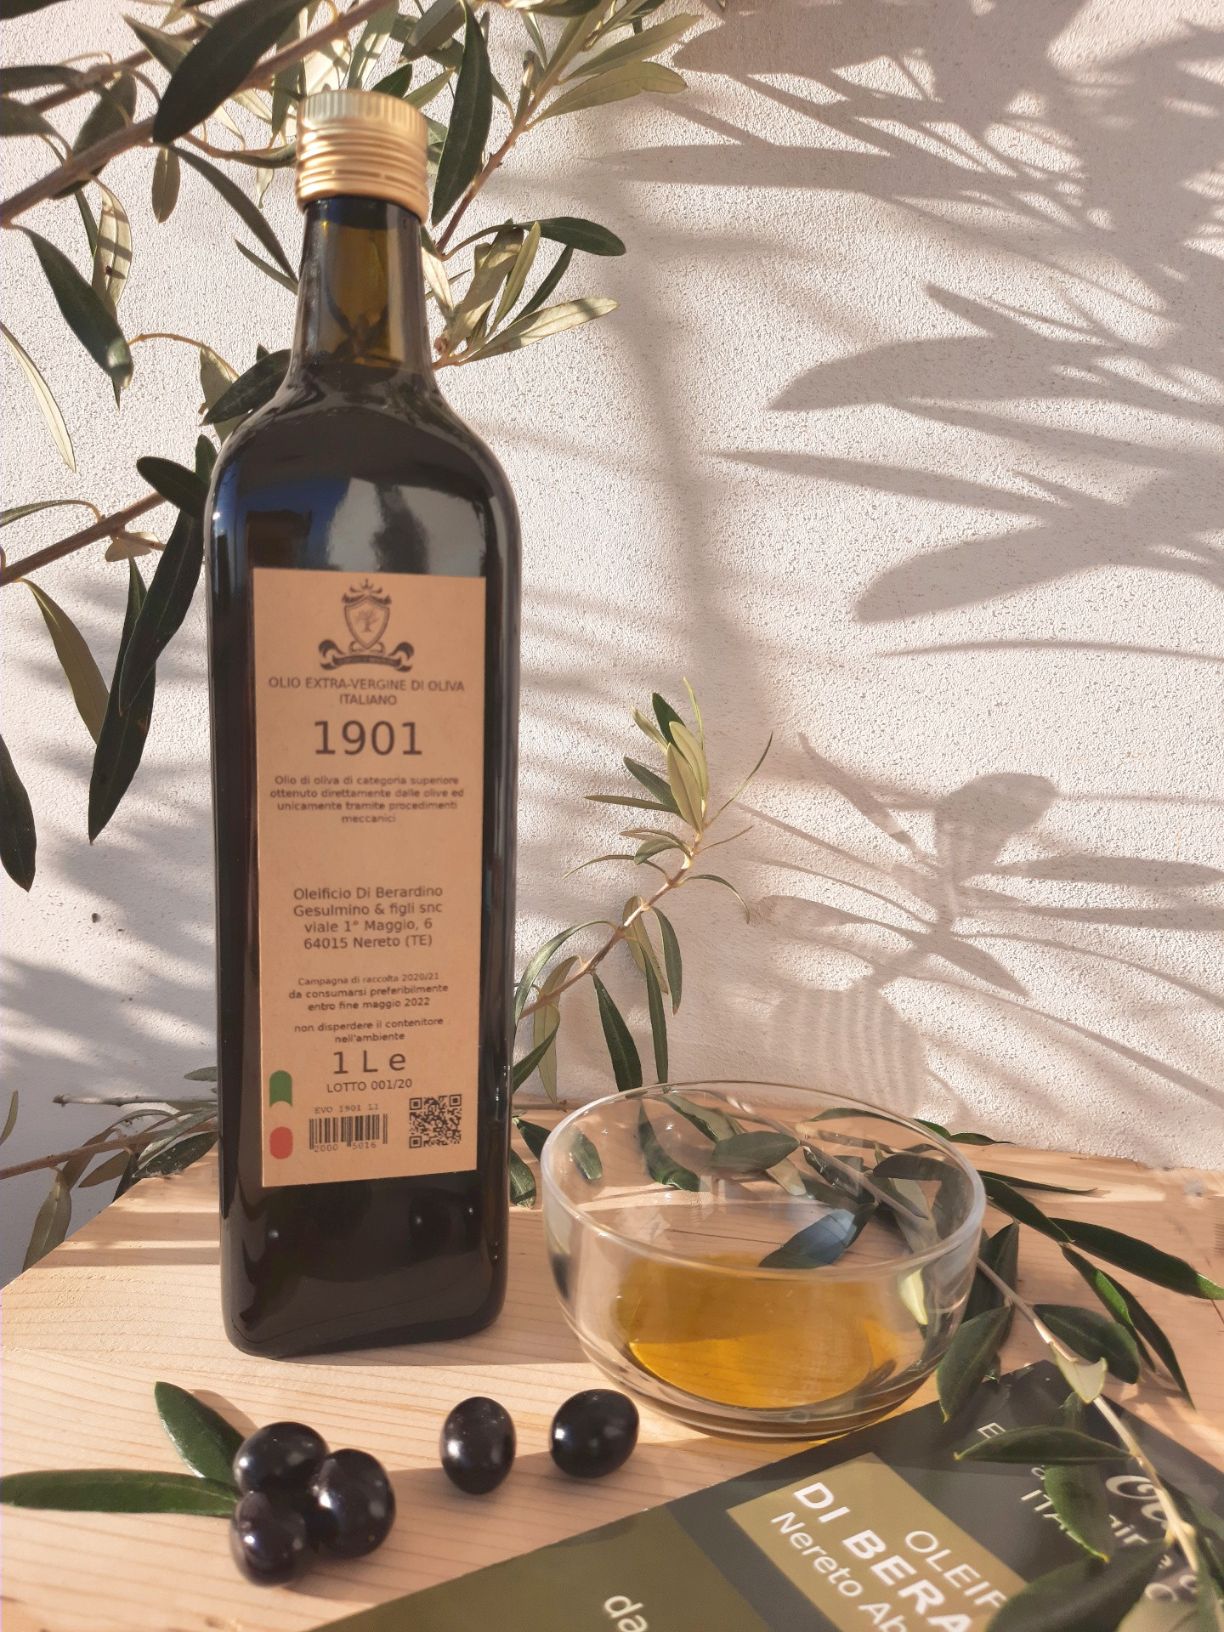 Olio extraverdine di oliva italiano 1901, extravirgin olive oil